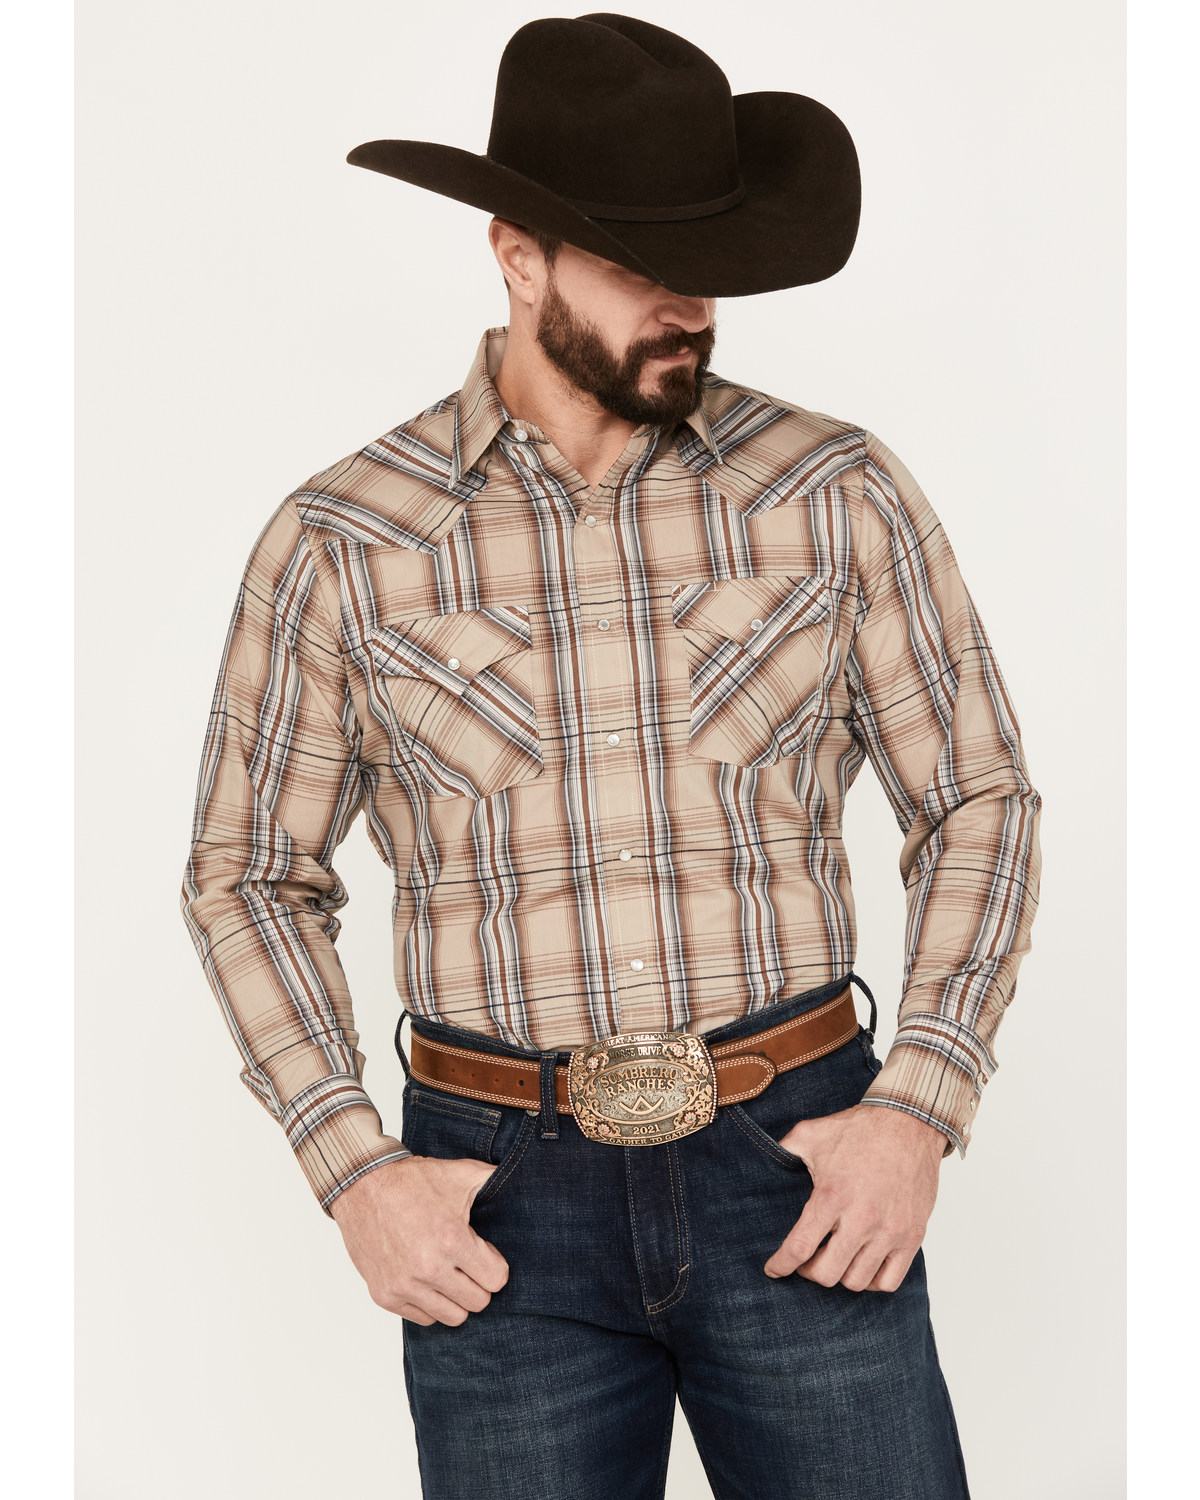 Ely Walker Men's Plaid Print Long Sleeve Pearl Snap Western Shirt